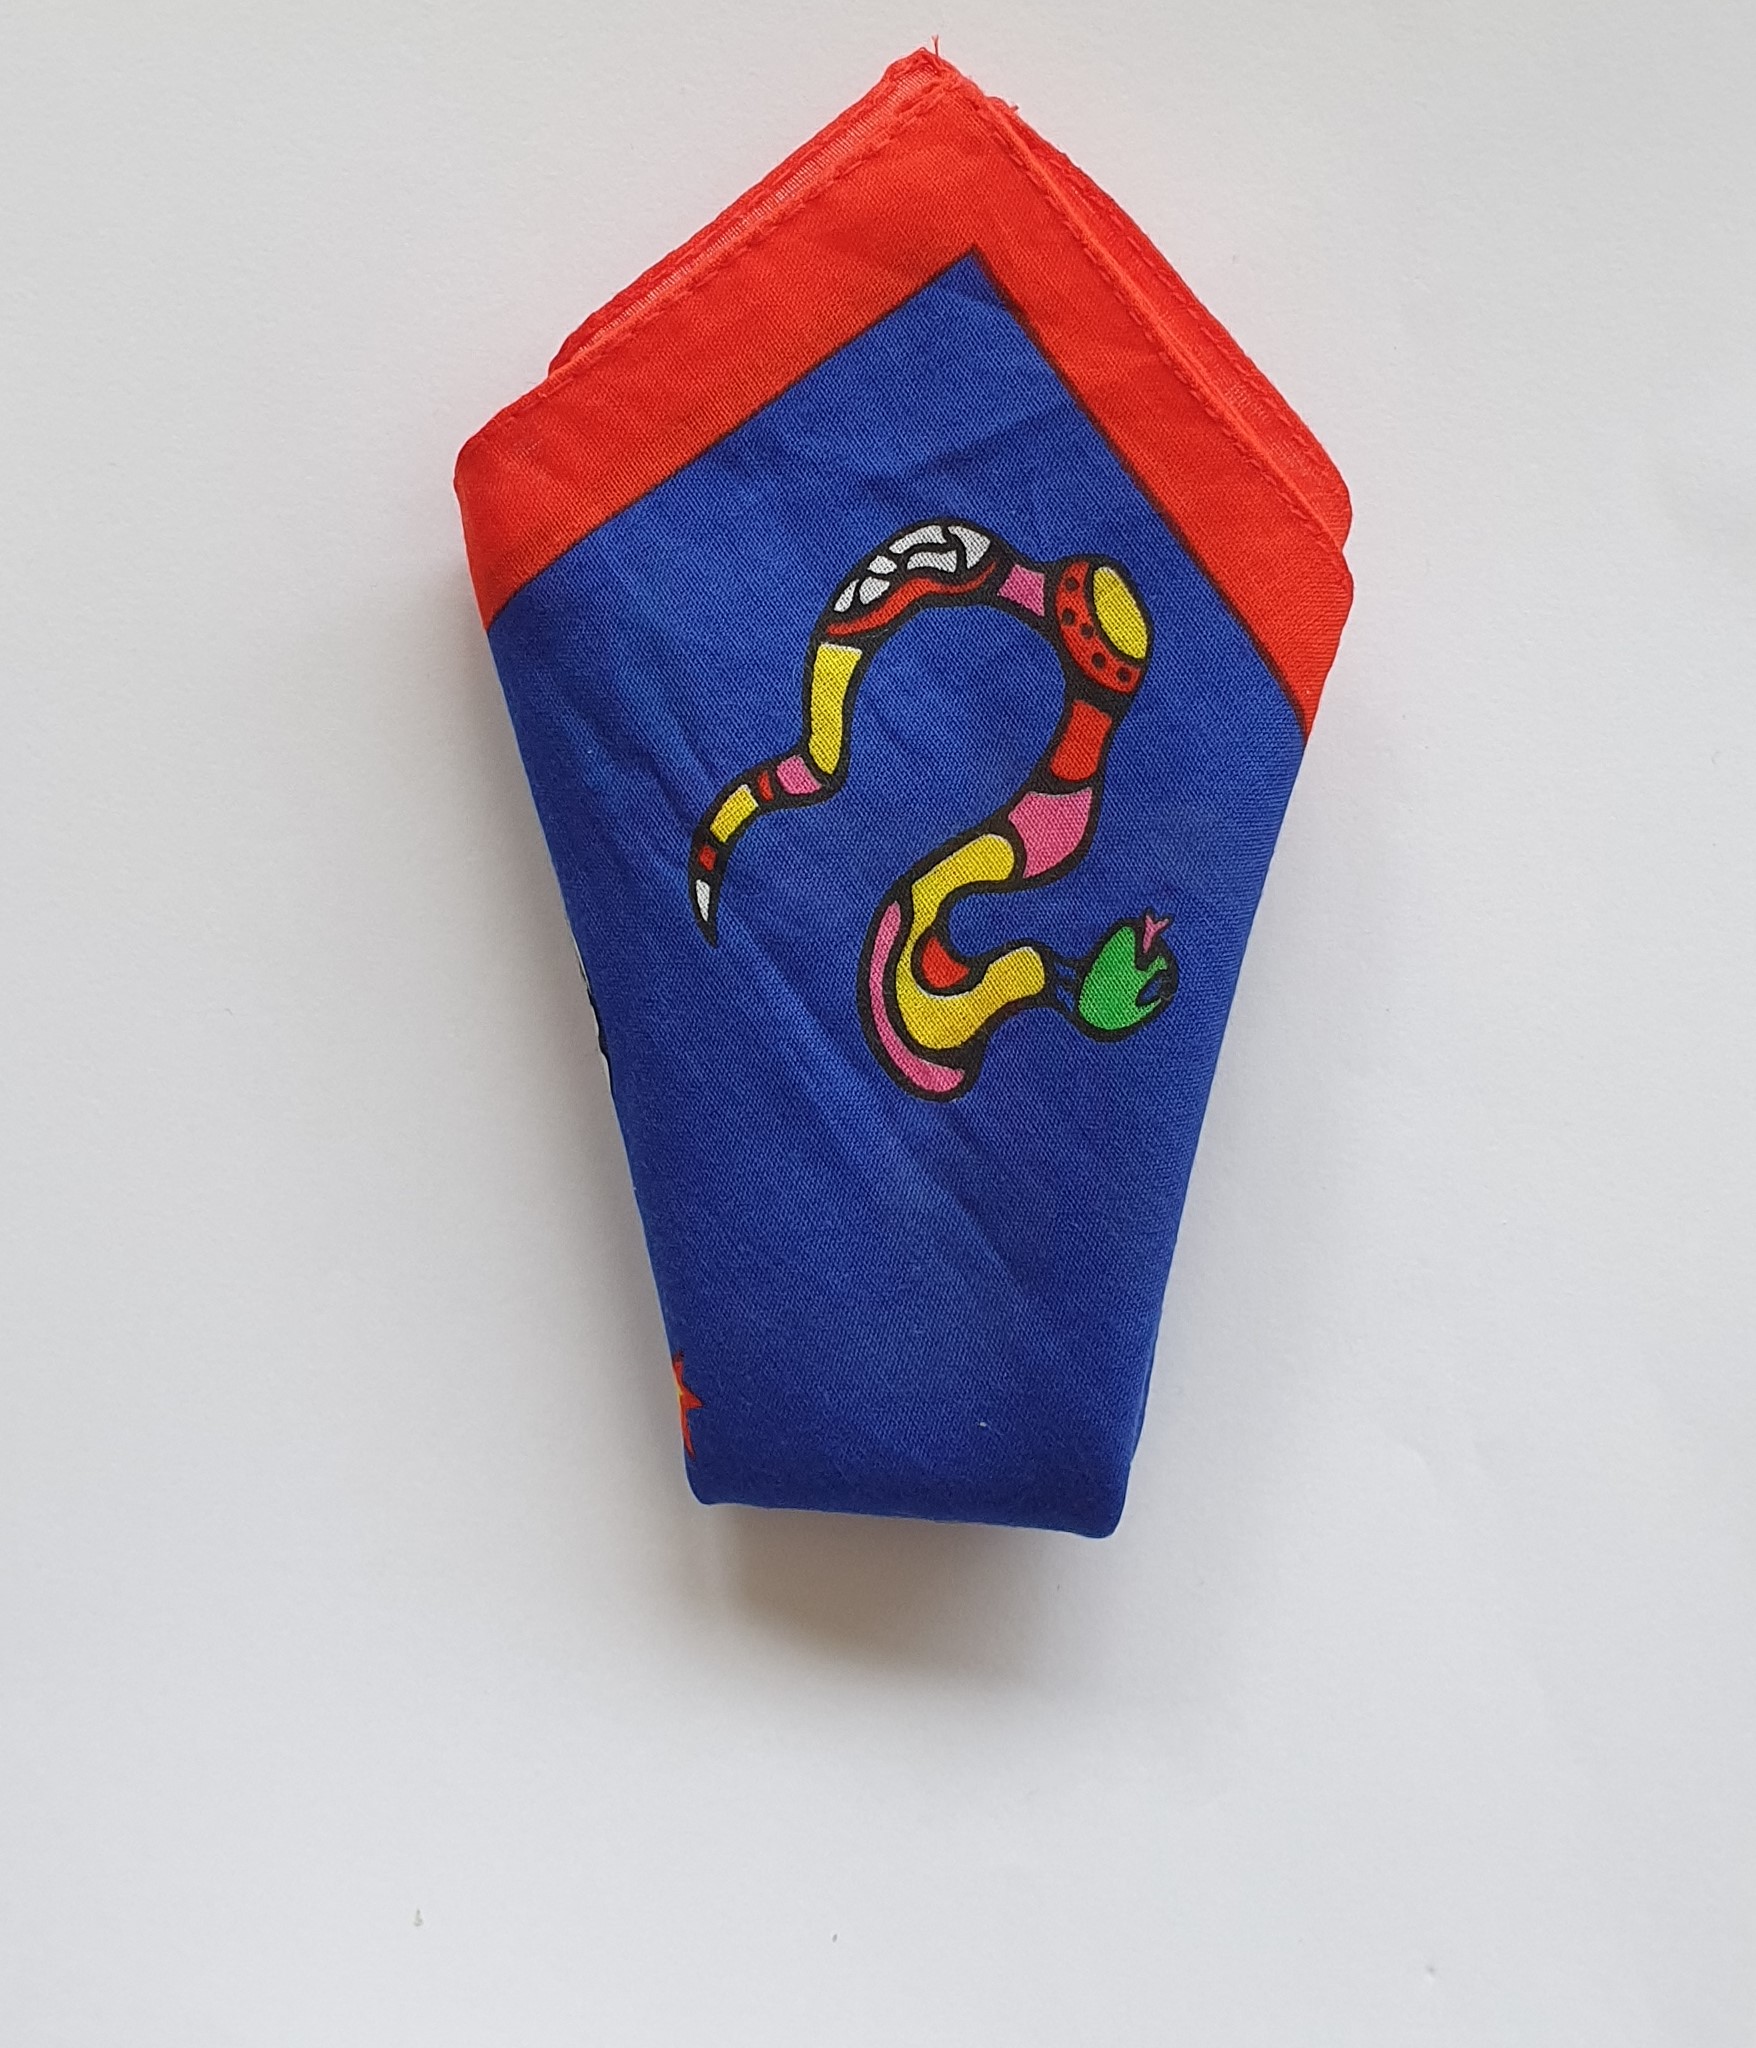 Pochette - Niki de Saint Phalle - tissu bleu et rouge - motif serpent coloré